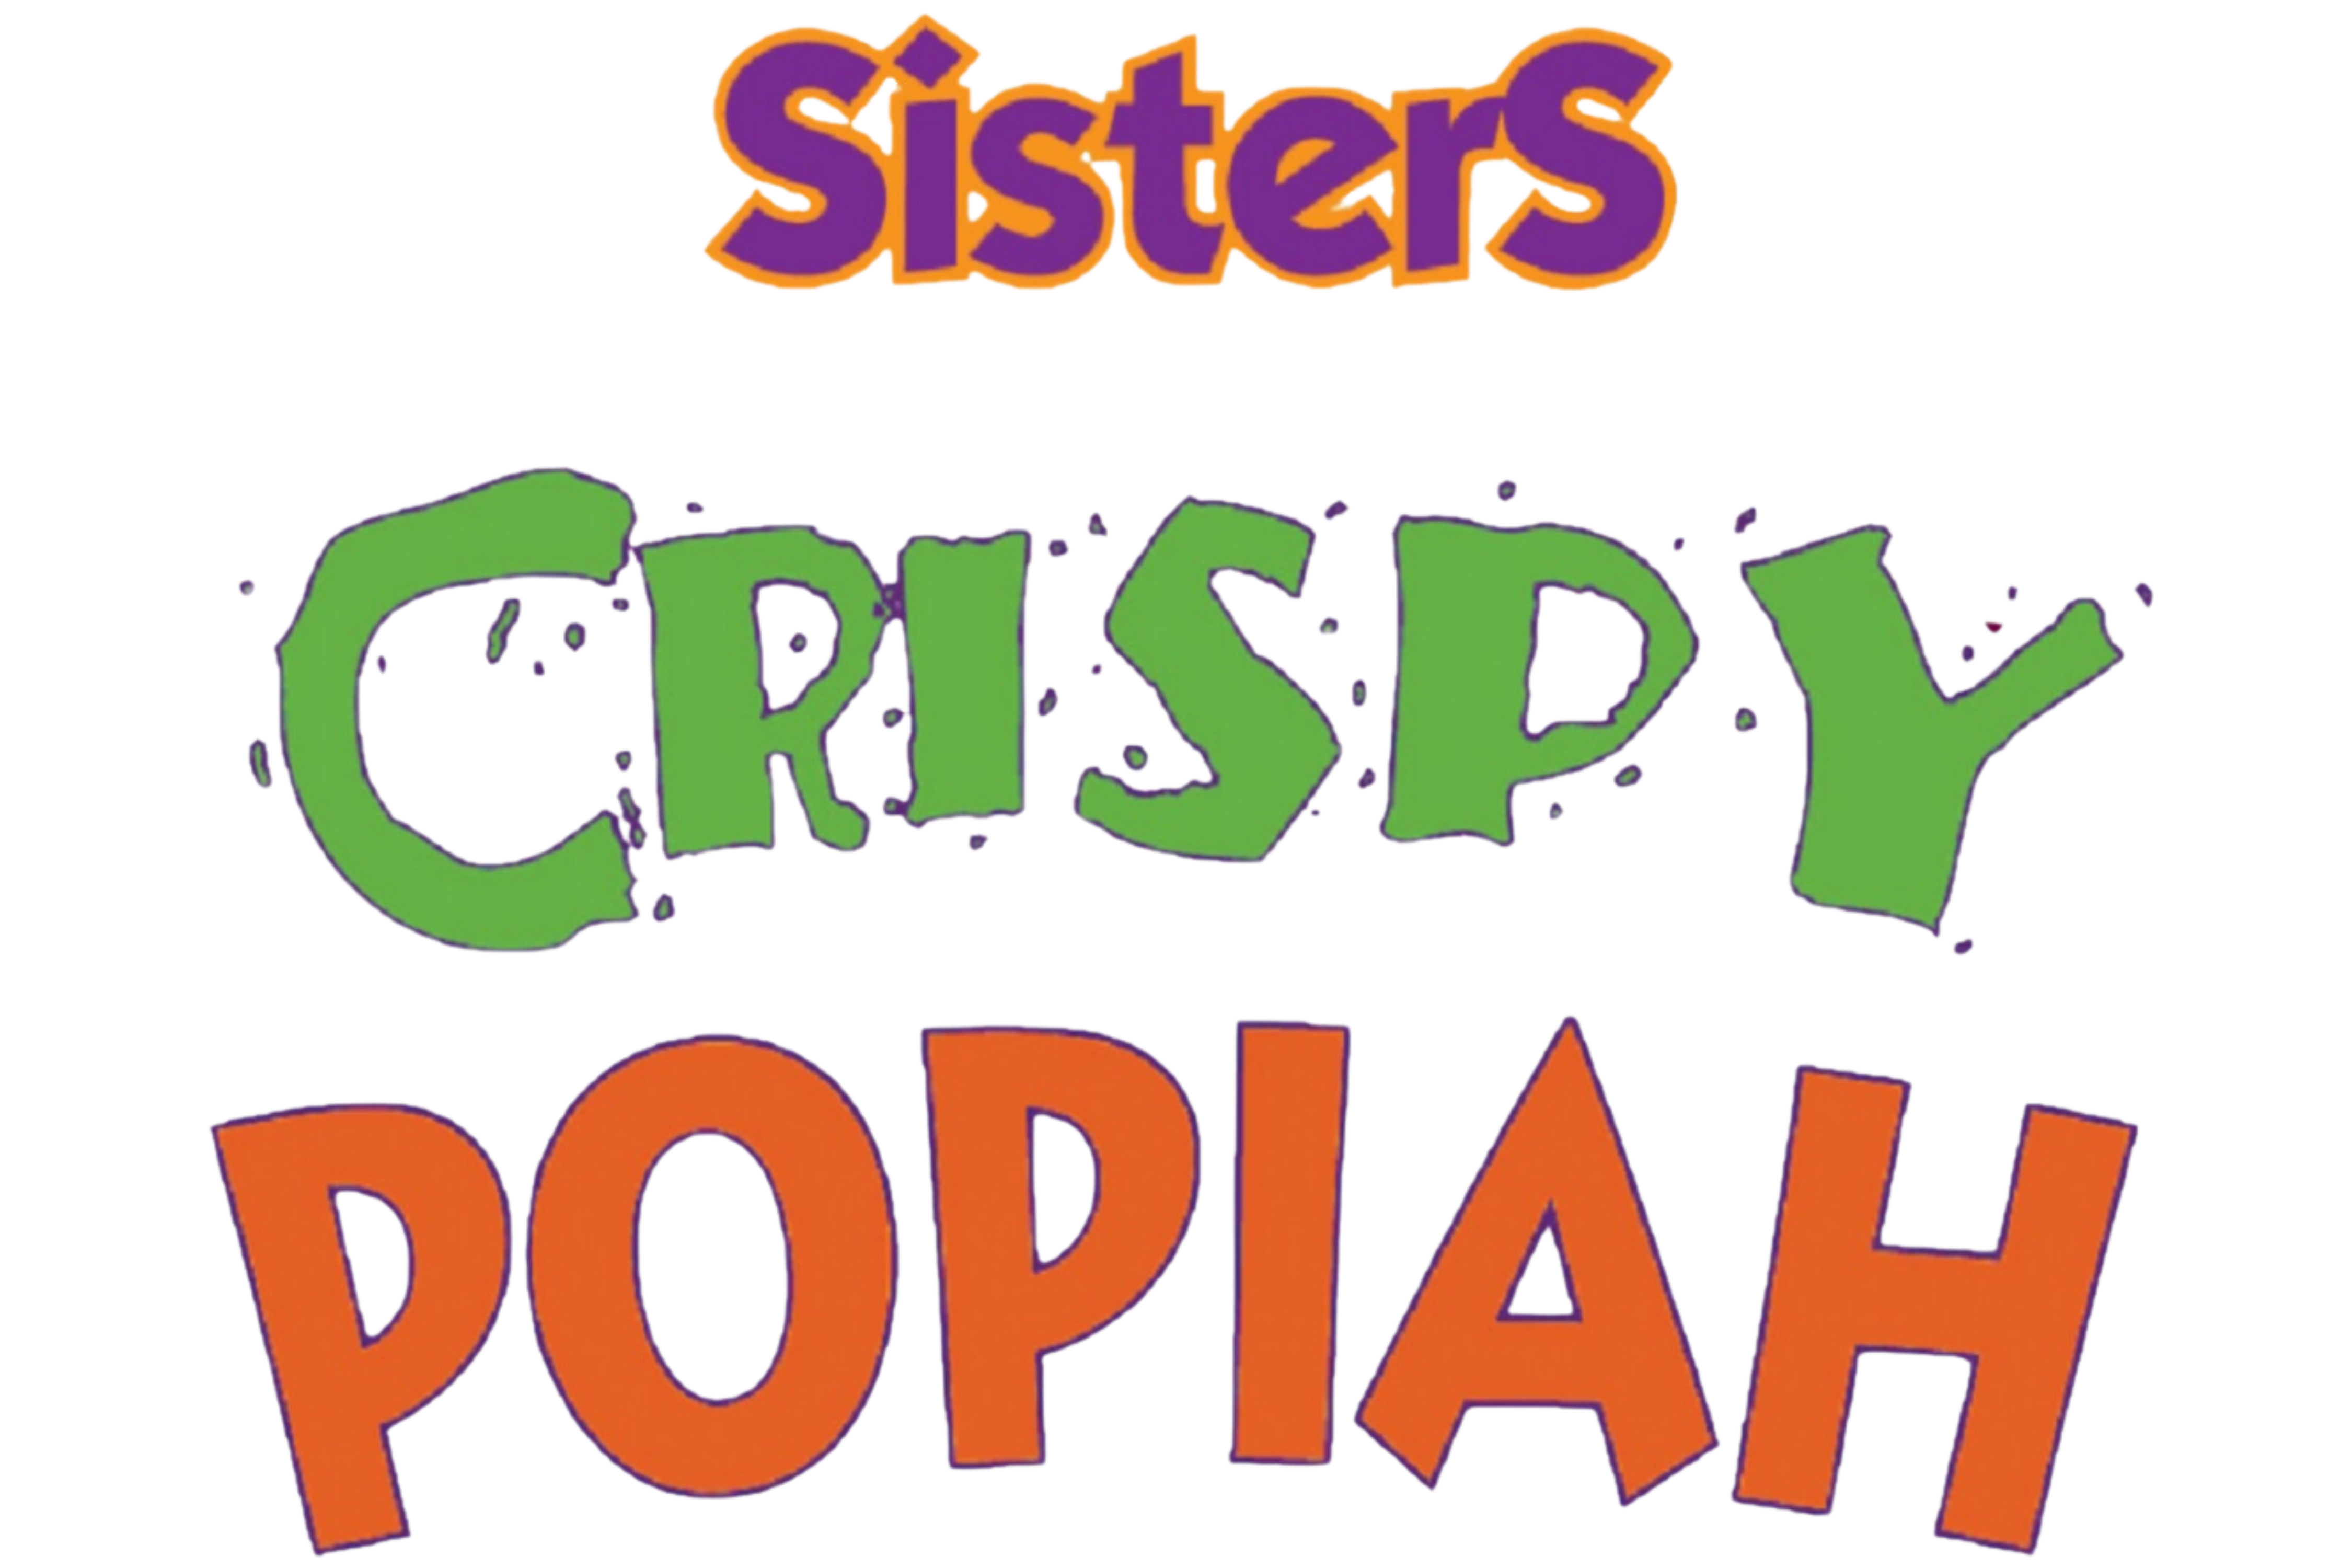 Sisters Crispy Popiah